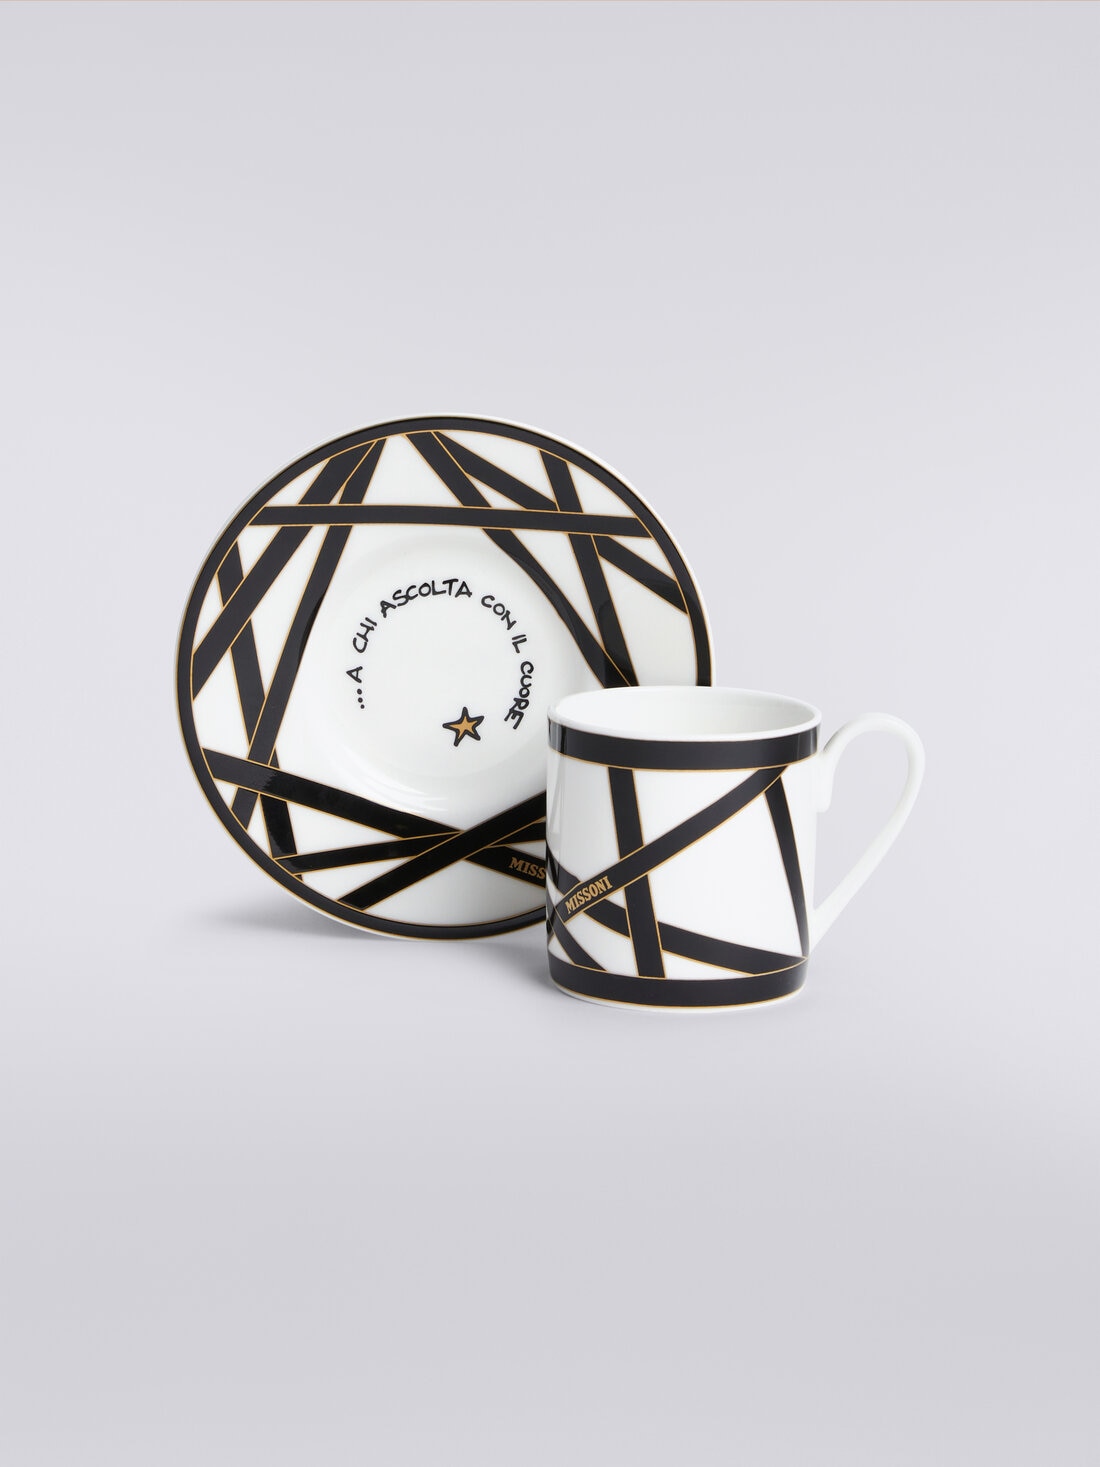 Missoni x Suonare Stella coffee cup and saucer set, Black & Multicoloured  - 8053147146485 - 1